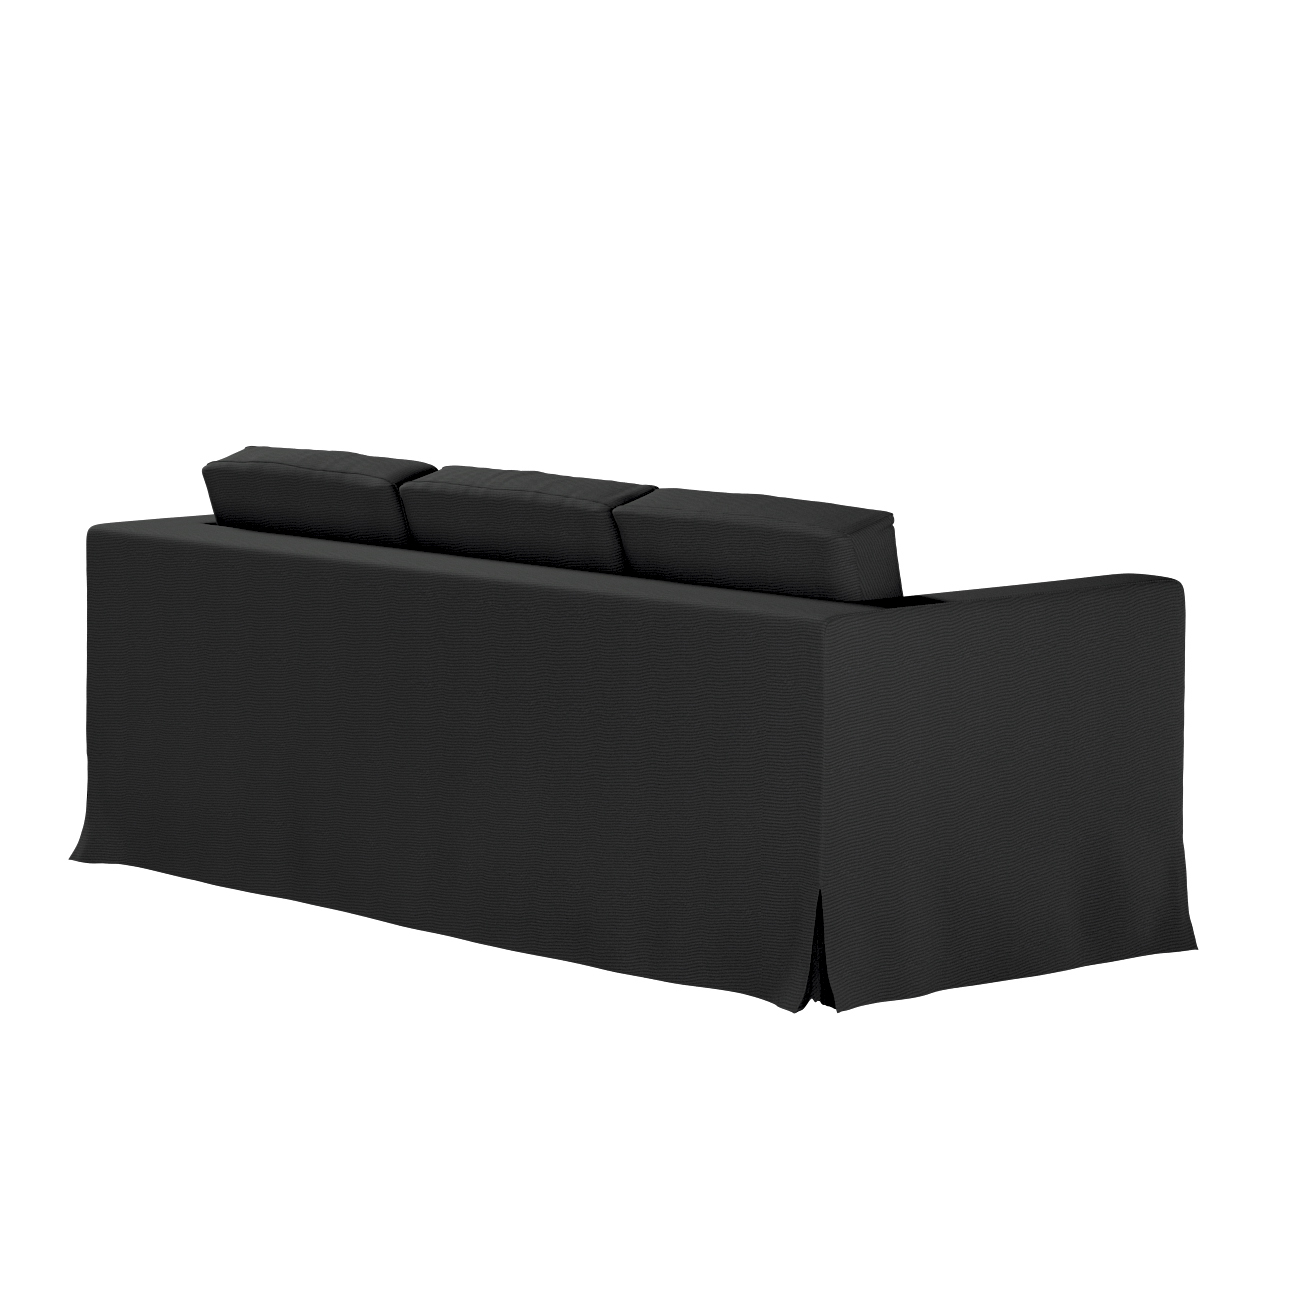 Bezug für Karlanda 3-Sitzer Sofa nicht ausklappbar, lang, schwarz, Bezug fü günstig online kaufen